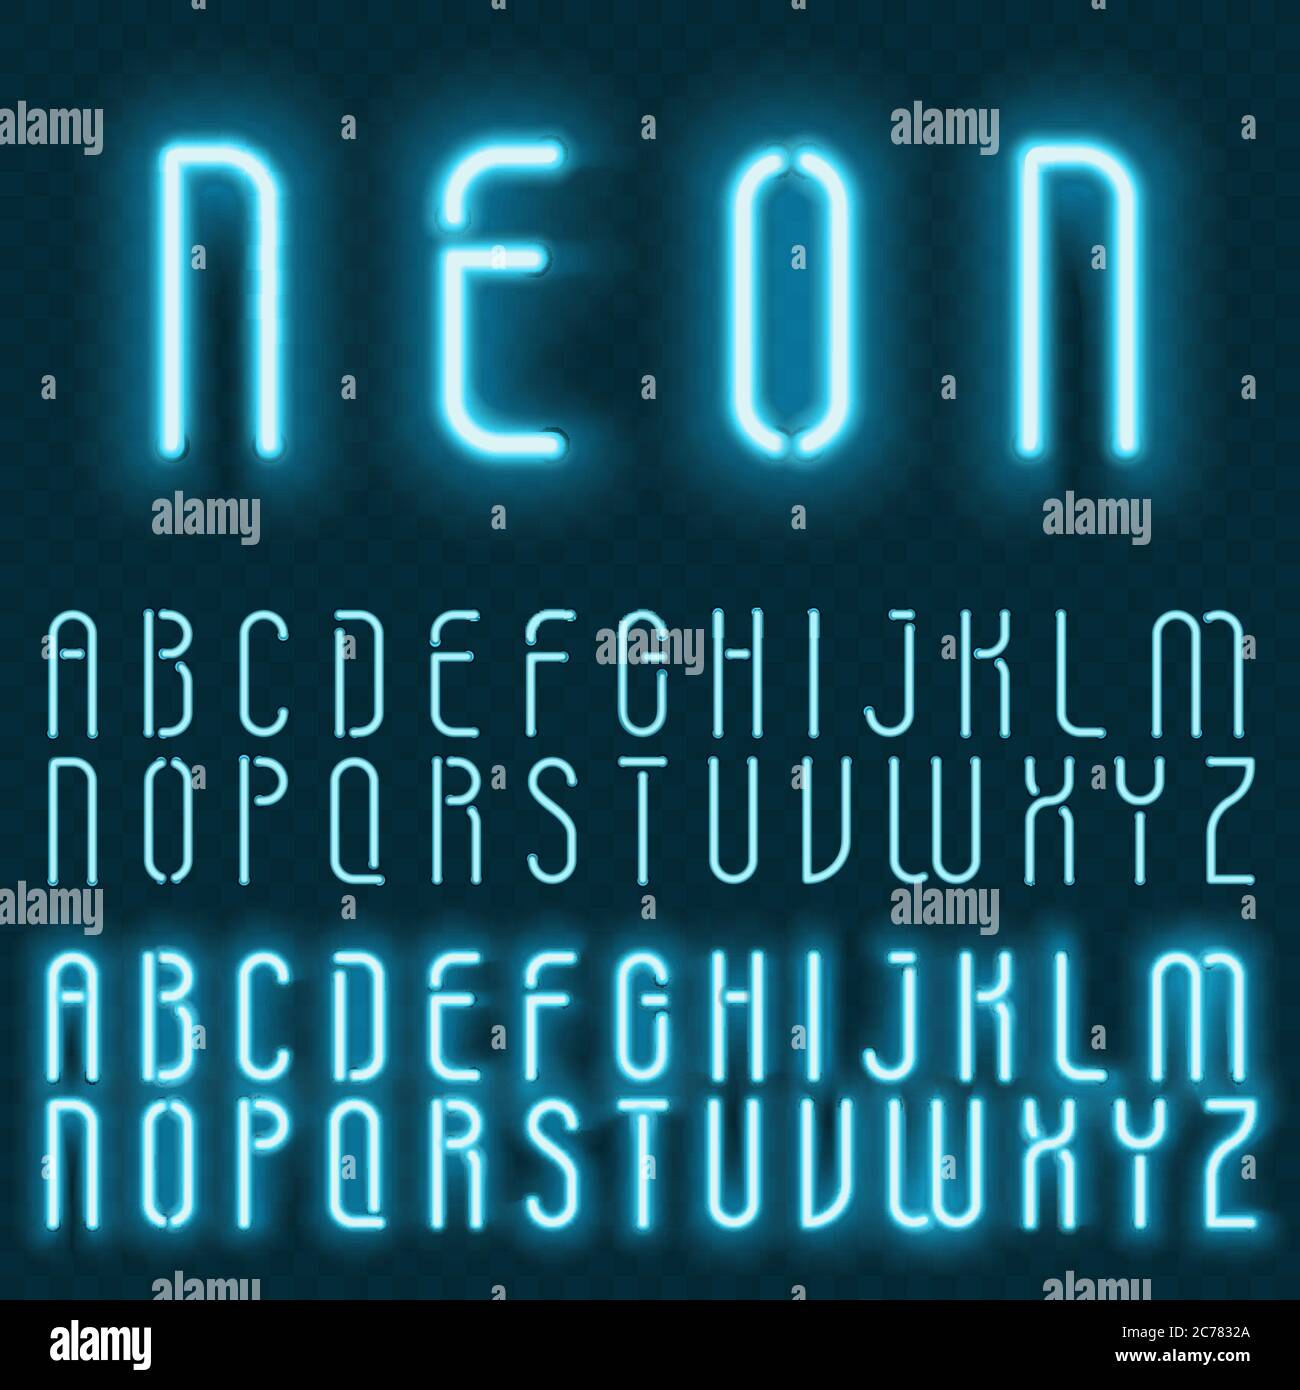 Alfabeto neon vettoriale realistico. Caratteri luminosi e luminosi sullo sfondo transperant Illustrazione Vettoriale